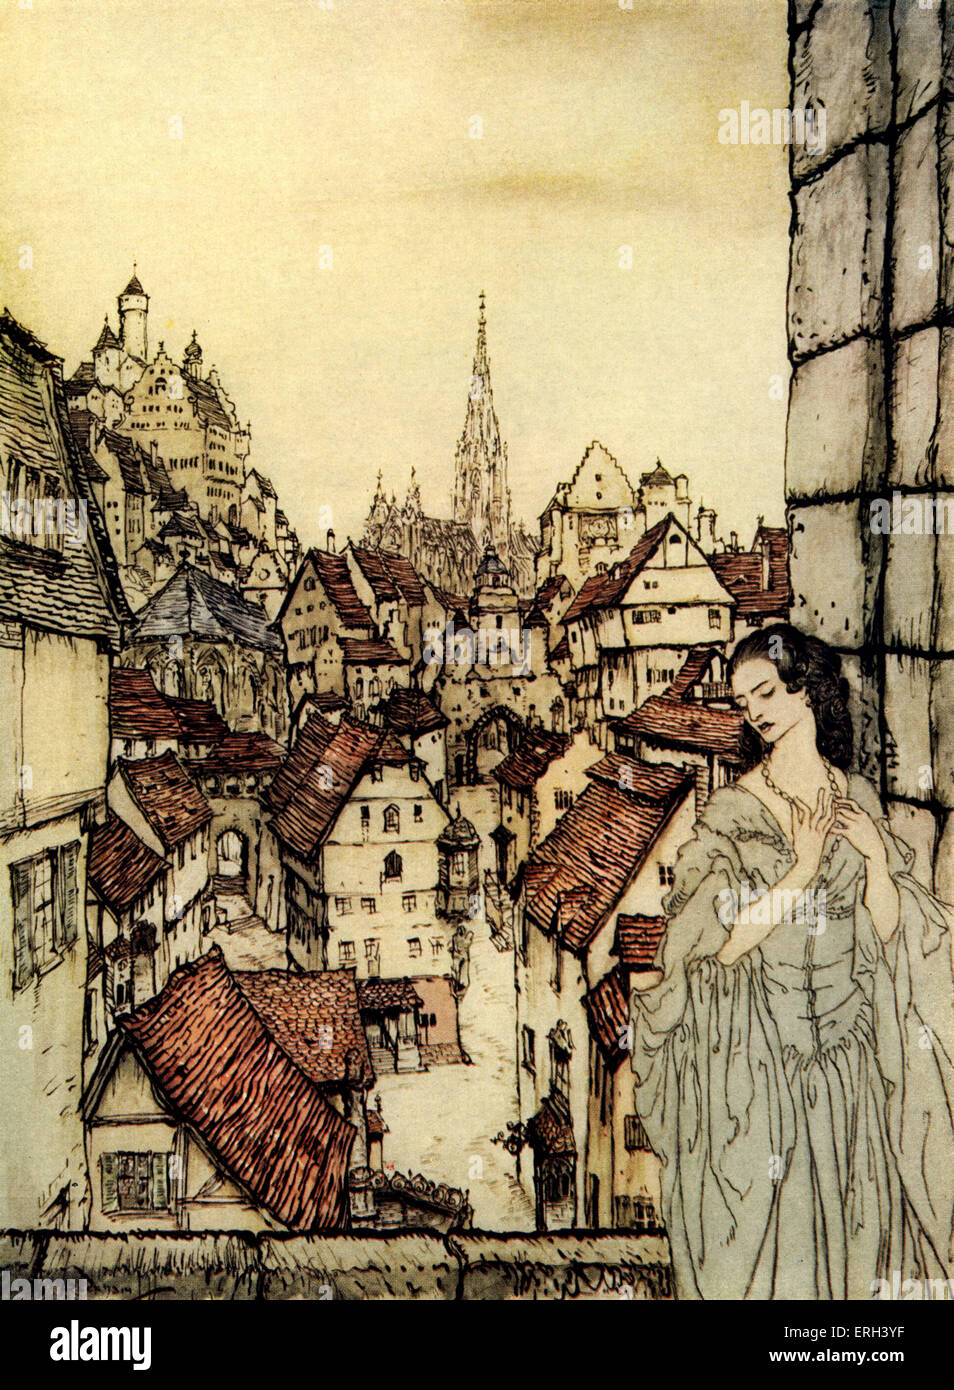 "Ligeia" von Edgar.  Gotisches Romanze zwischen Ligeia und namenlose Erzähler.  Ihrer ersten Begegnung in einer ungenannten Stadt auf Stockfoto